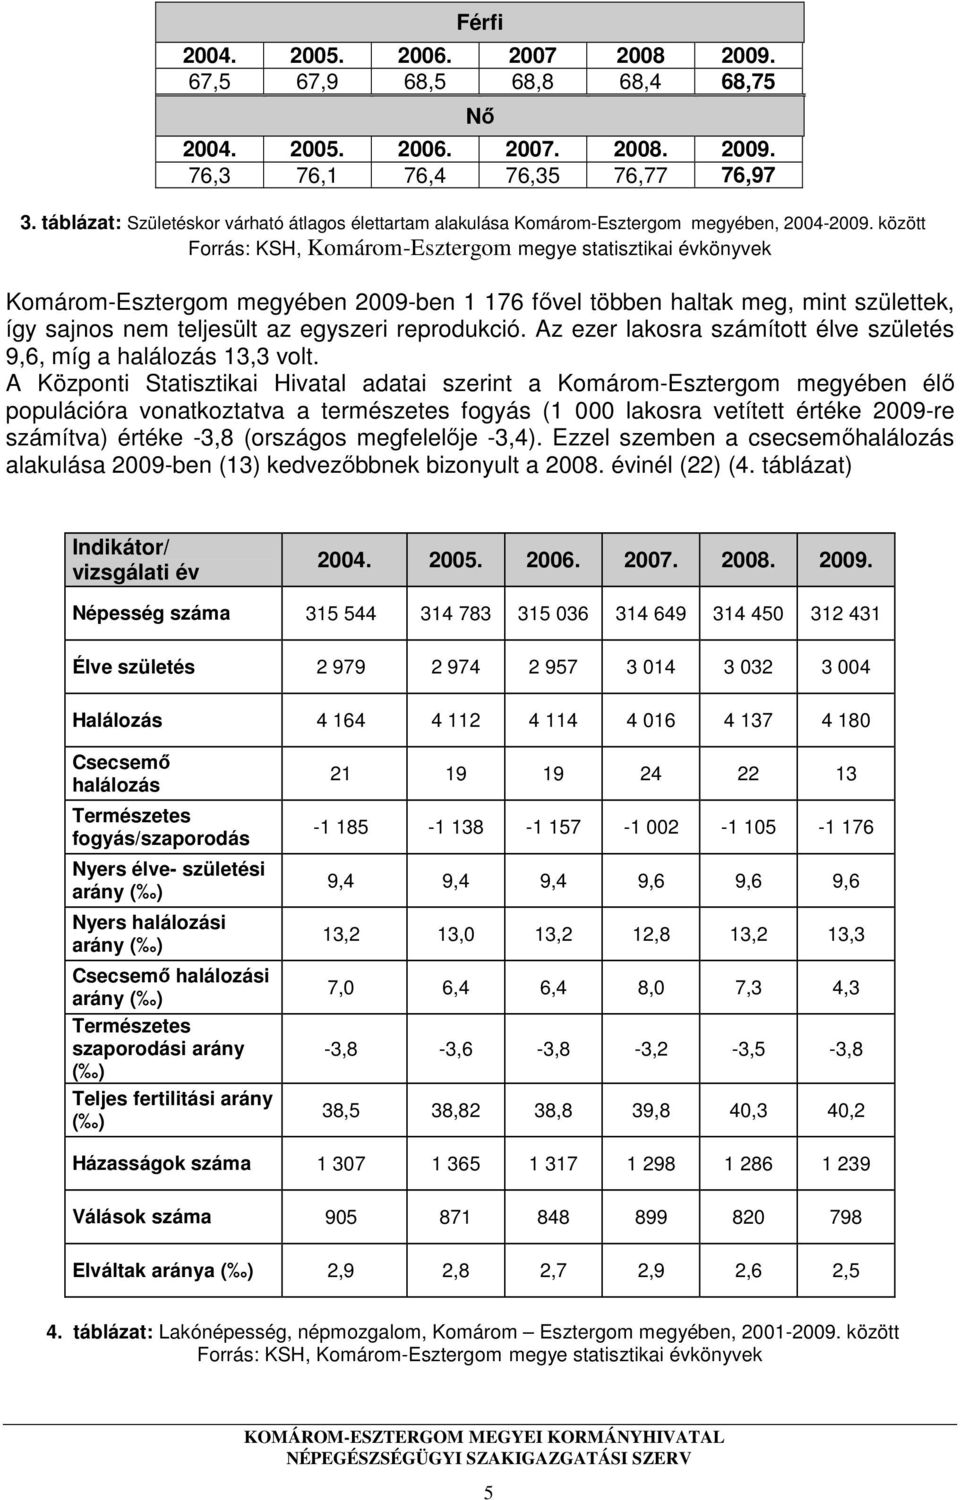 között Forrás: KSH, Komárom-Esztergom megye statisztikai évkönyvek Komárom-Esztergom megyében 2009-ben 1 176 fővel többen haltak meg, mint születtek, így sajnos nem teljesült az egyszeri reprodukció.